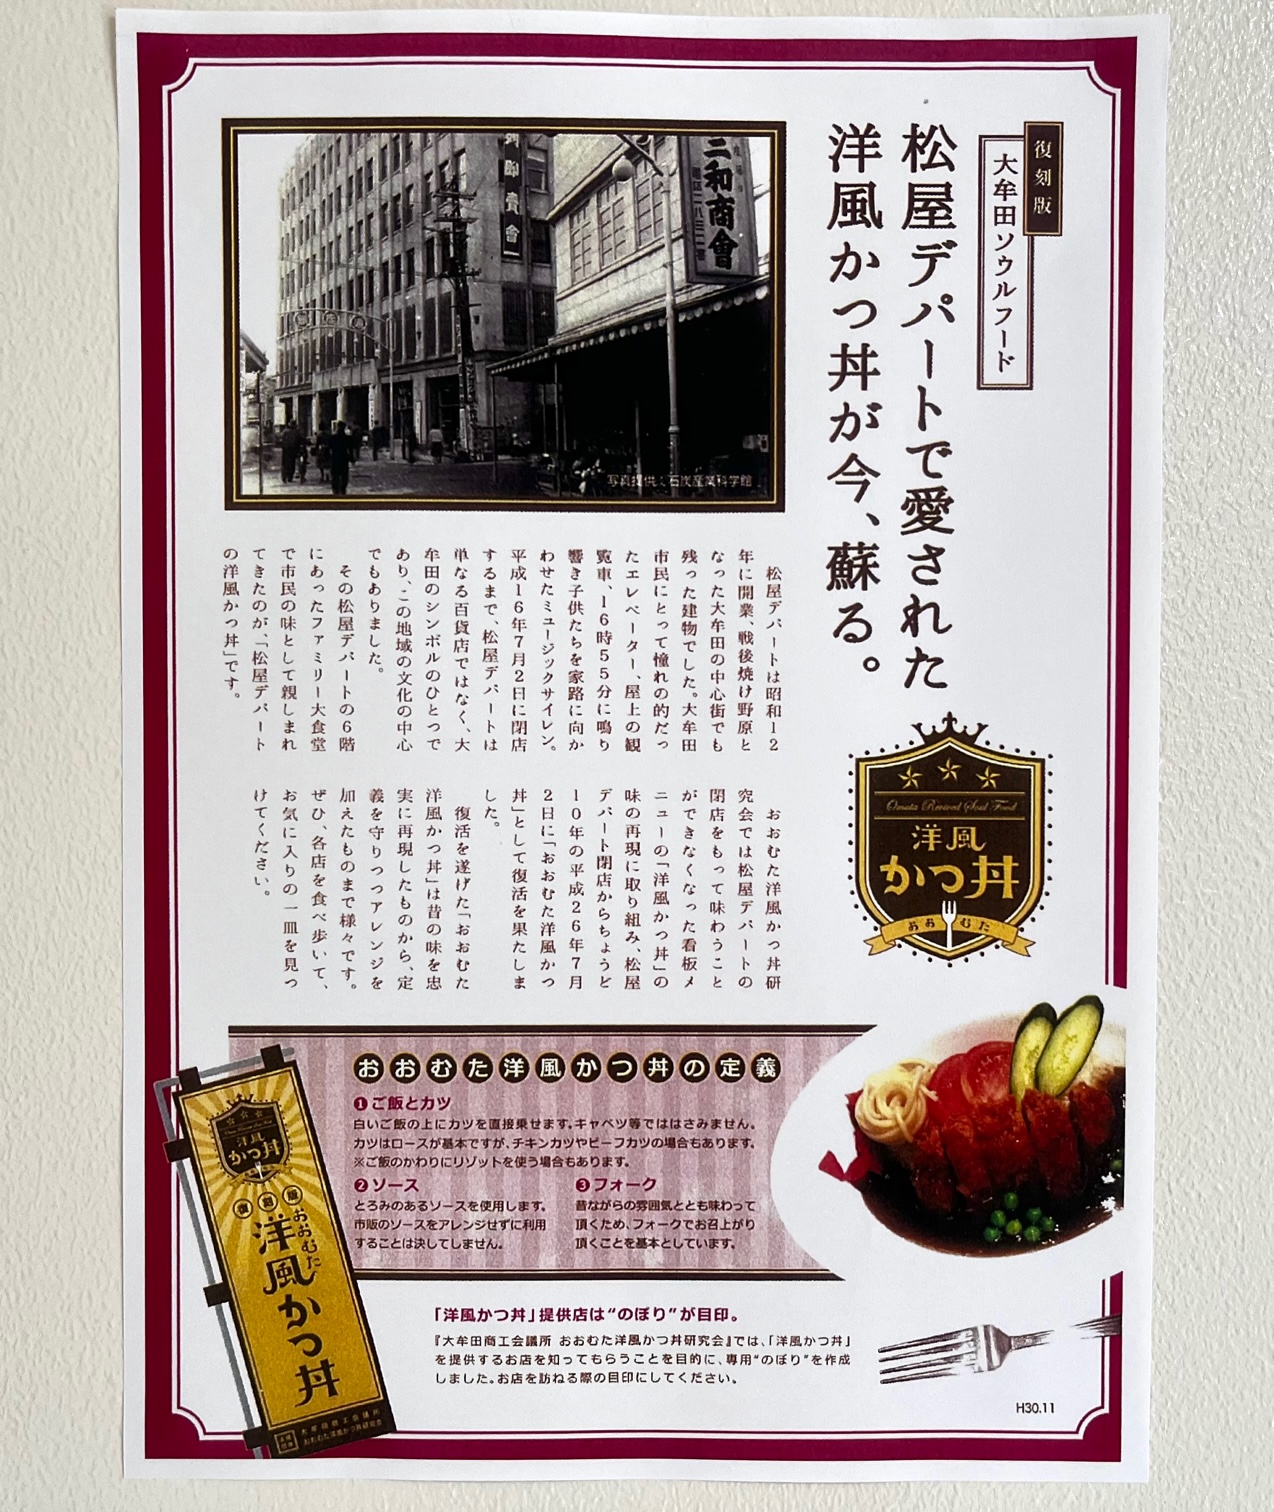 大牟田市笹林町の彩花の復刻版おおむた洋風かつ丼